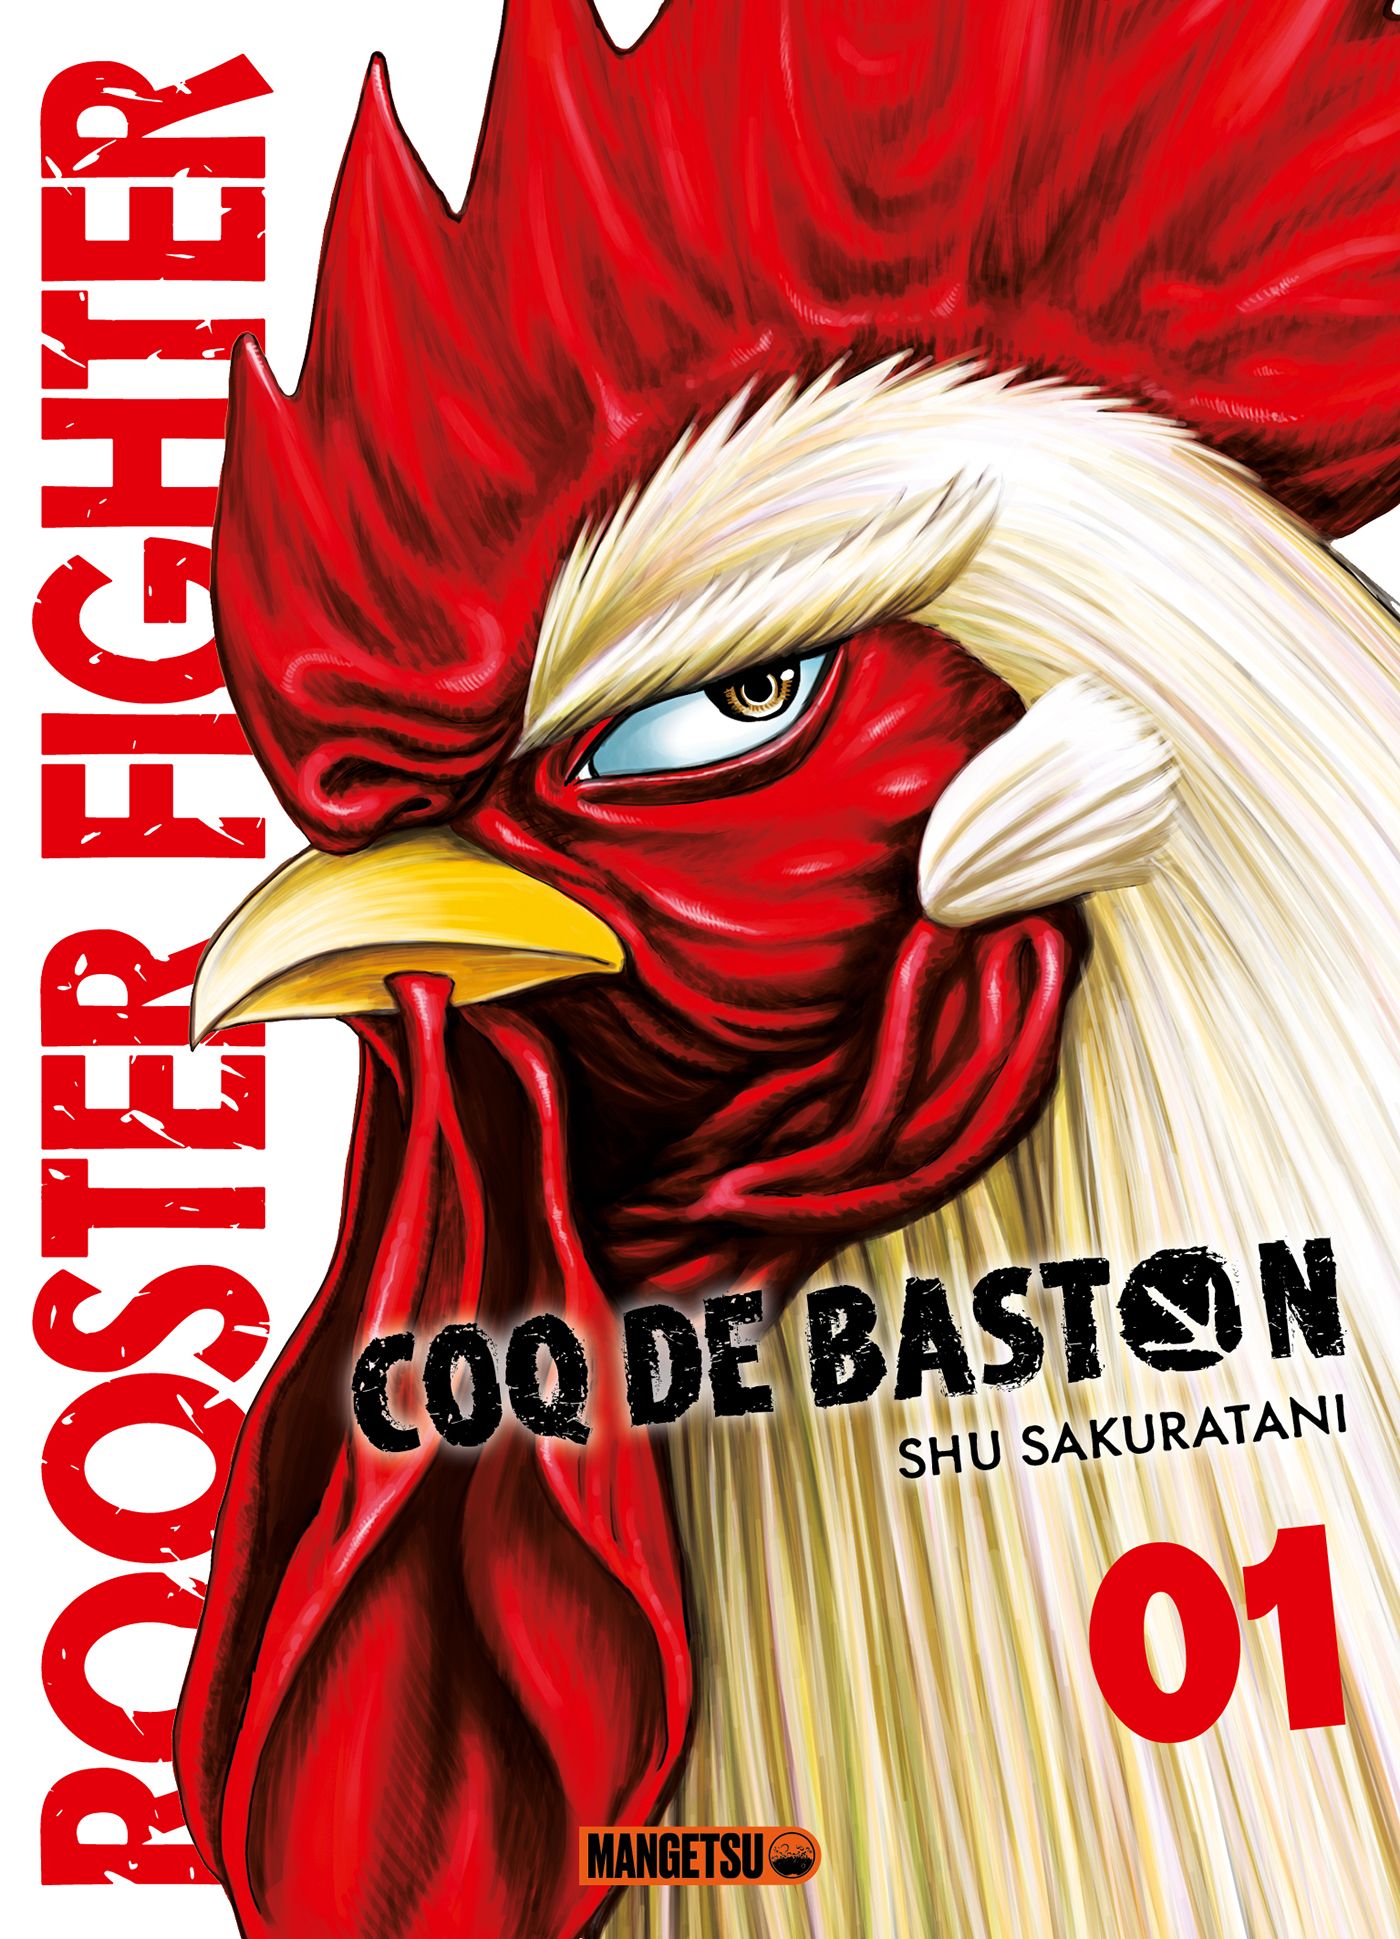 Rooster Fighter - Coq de Baston Intégrale en cours en édition limitée  